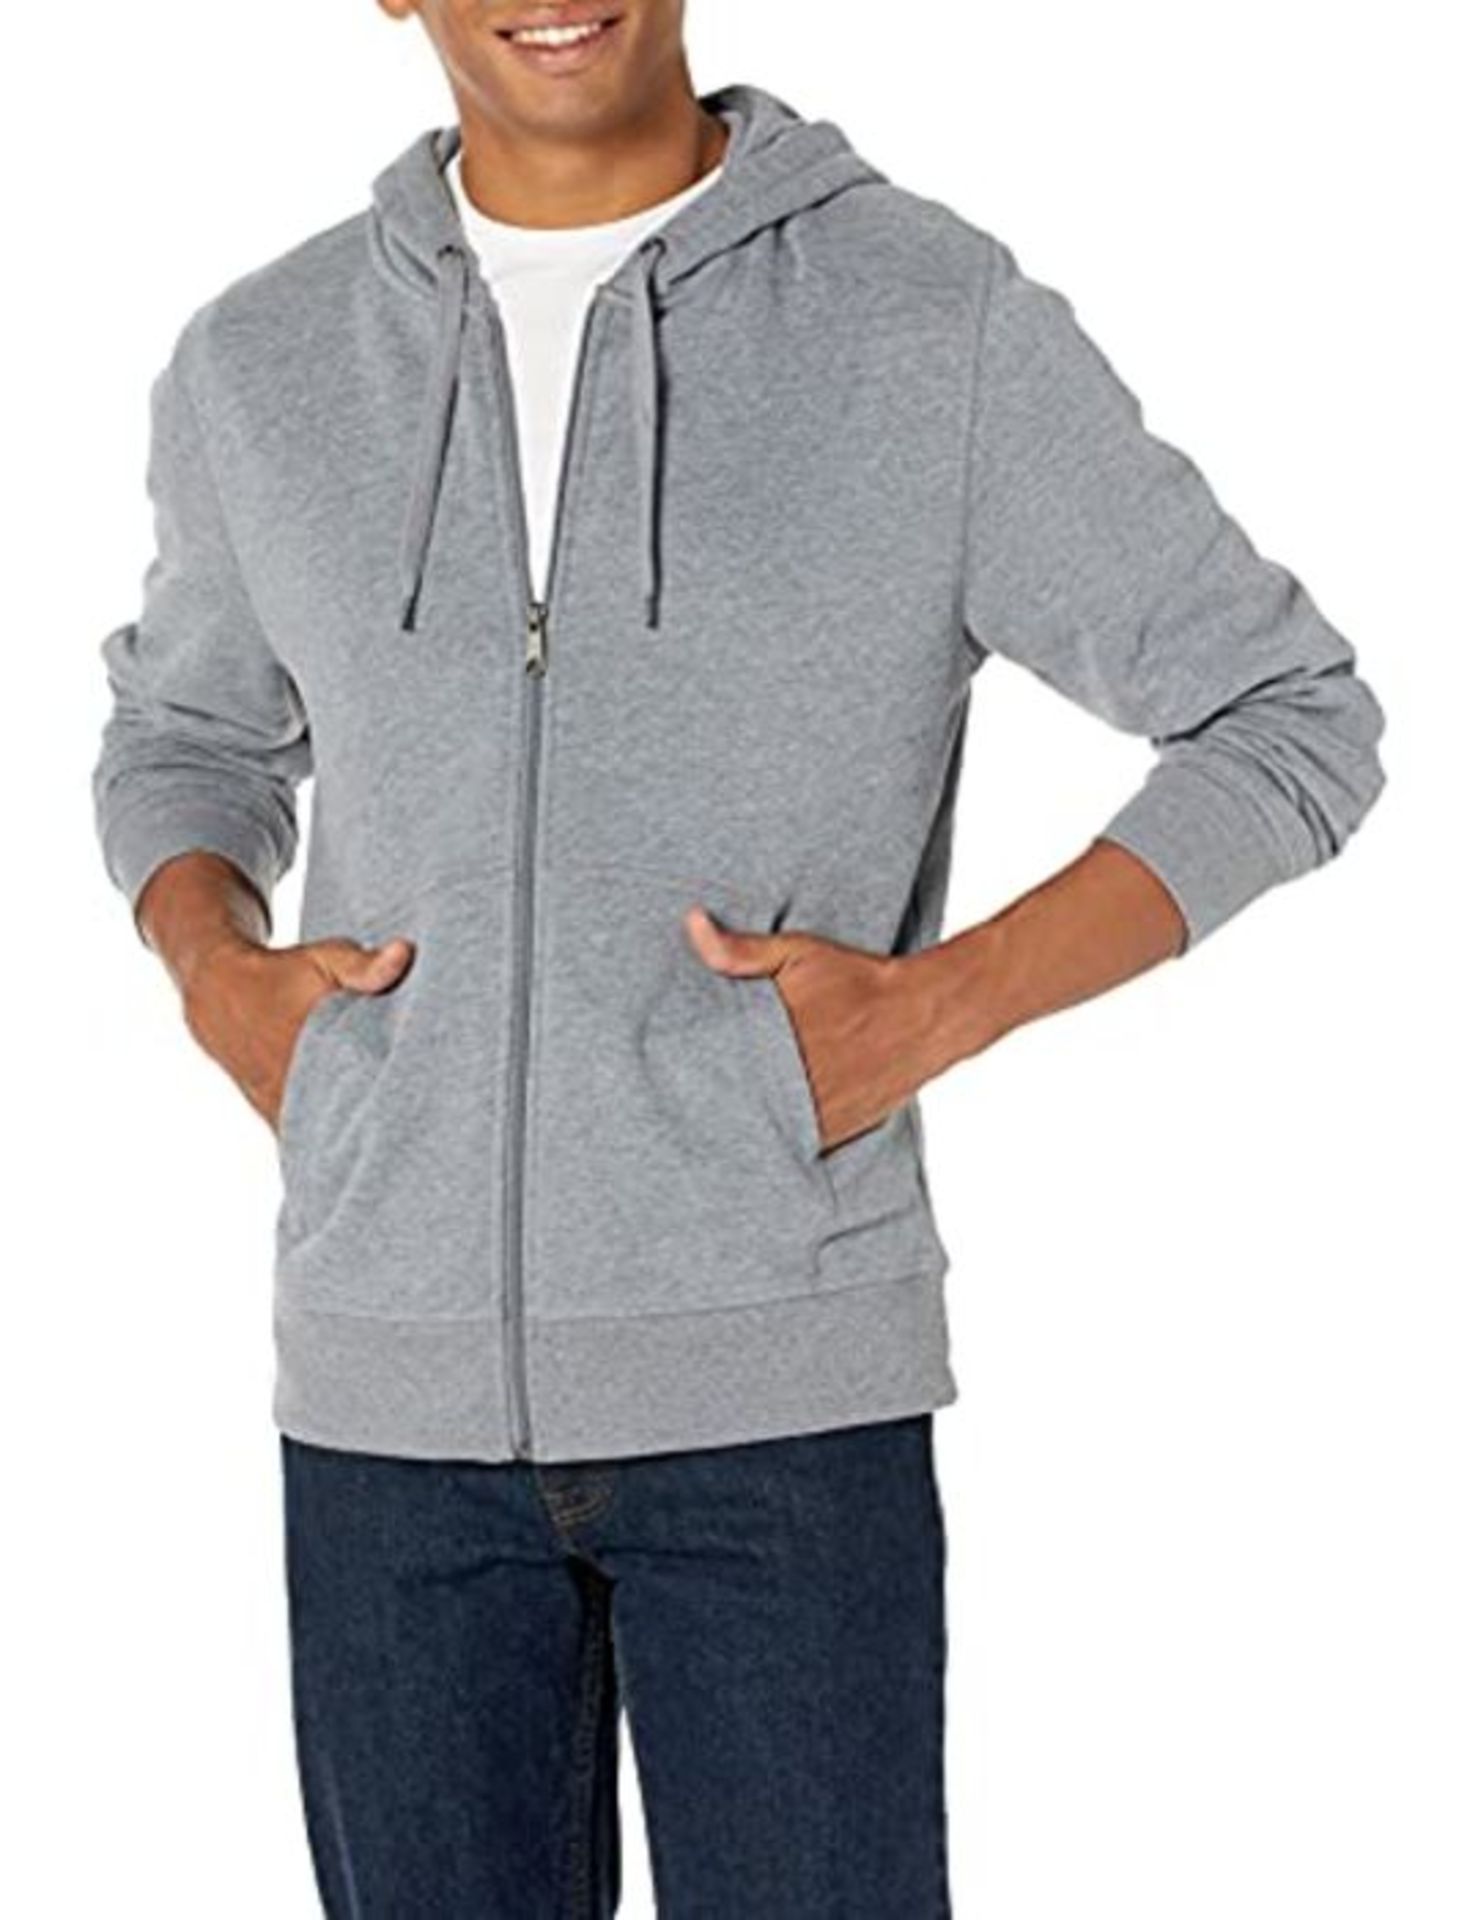 Amazon Essentials Men's Full-Zip Hooded Fleece Sweatshirt, Light Grey Heather, XXL